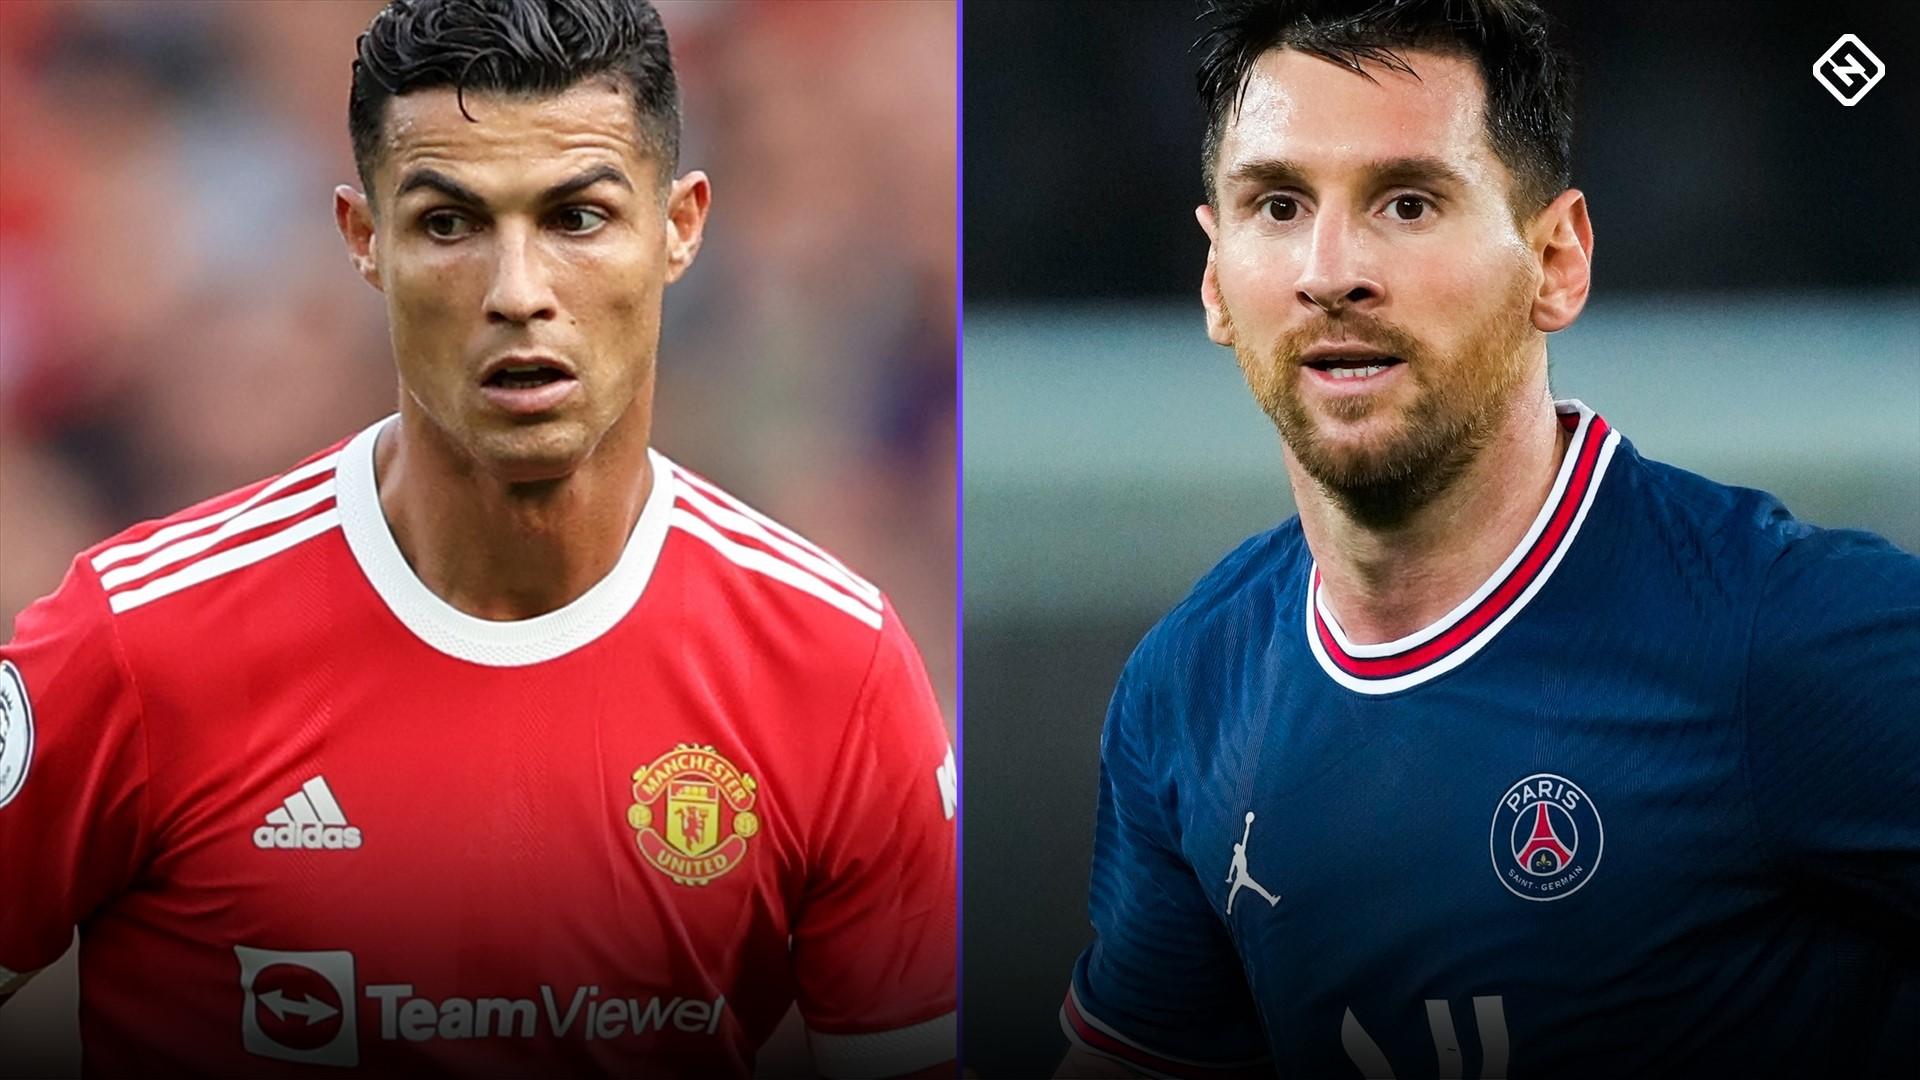 Comparaison Messi – Cristiano Ronaldo, la statistique qui plombe totalement le Portugais